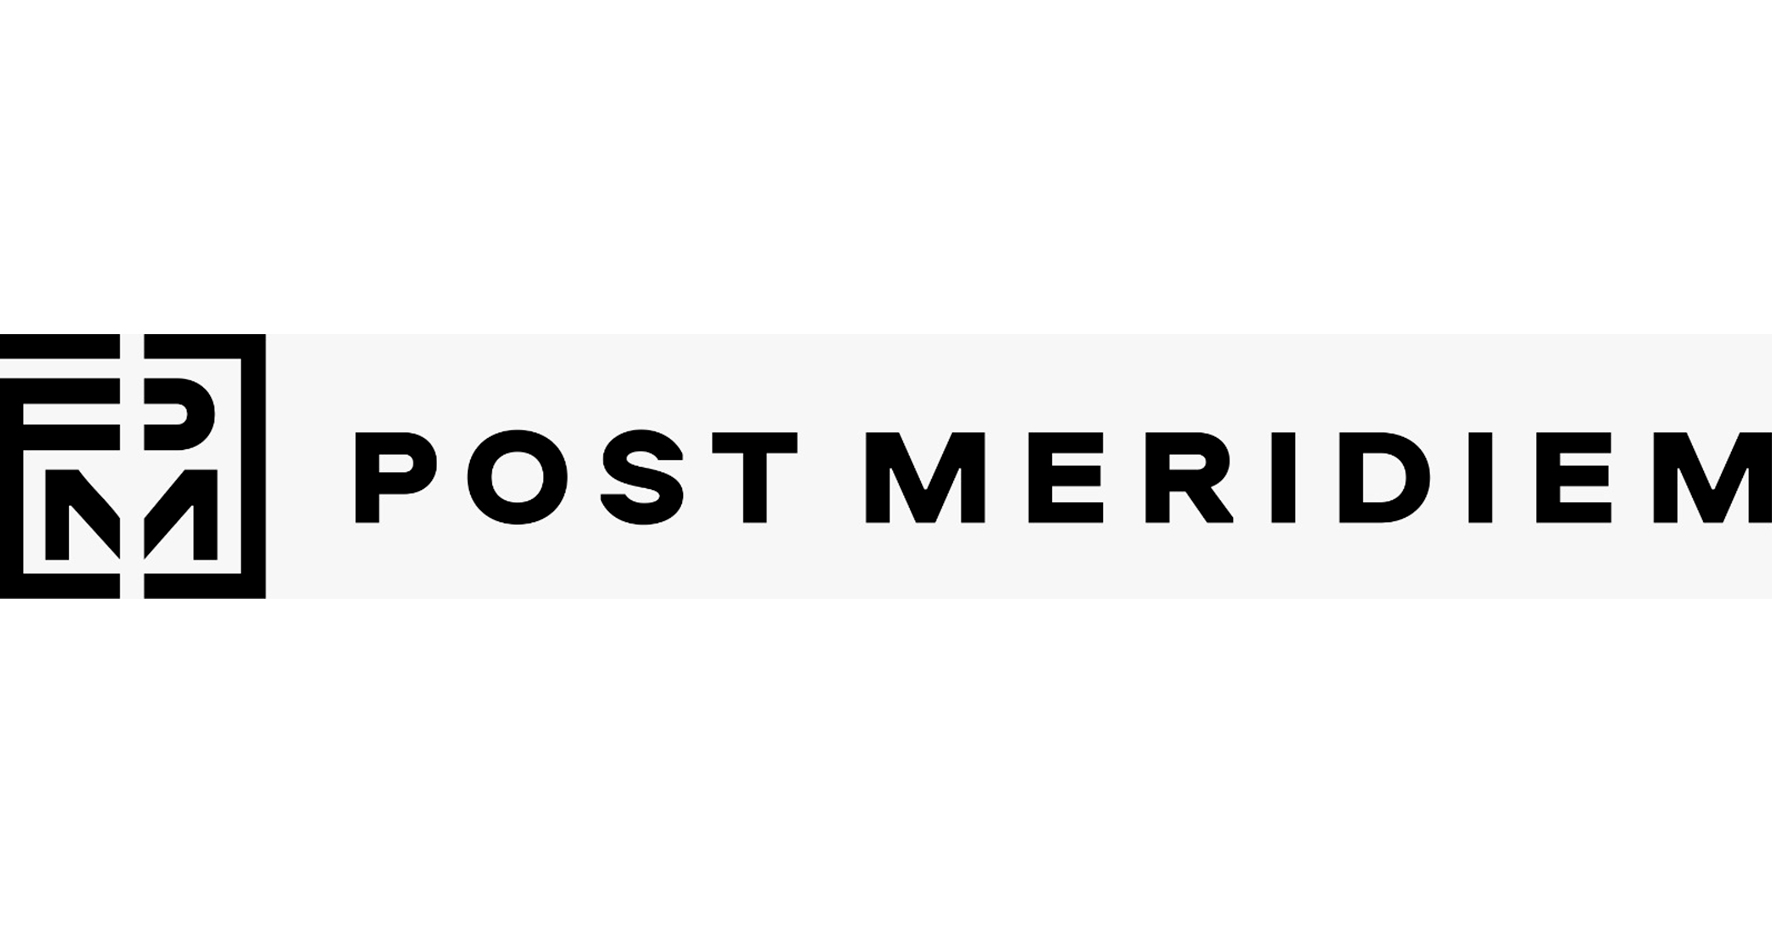 Post Meridiem Одежда и аксессуары, купить онлайн, Post Meridiem в универмаге Bolshoy